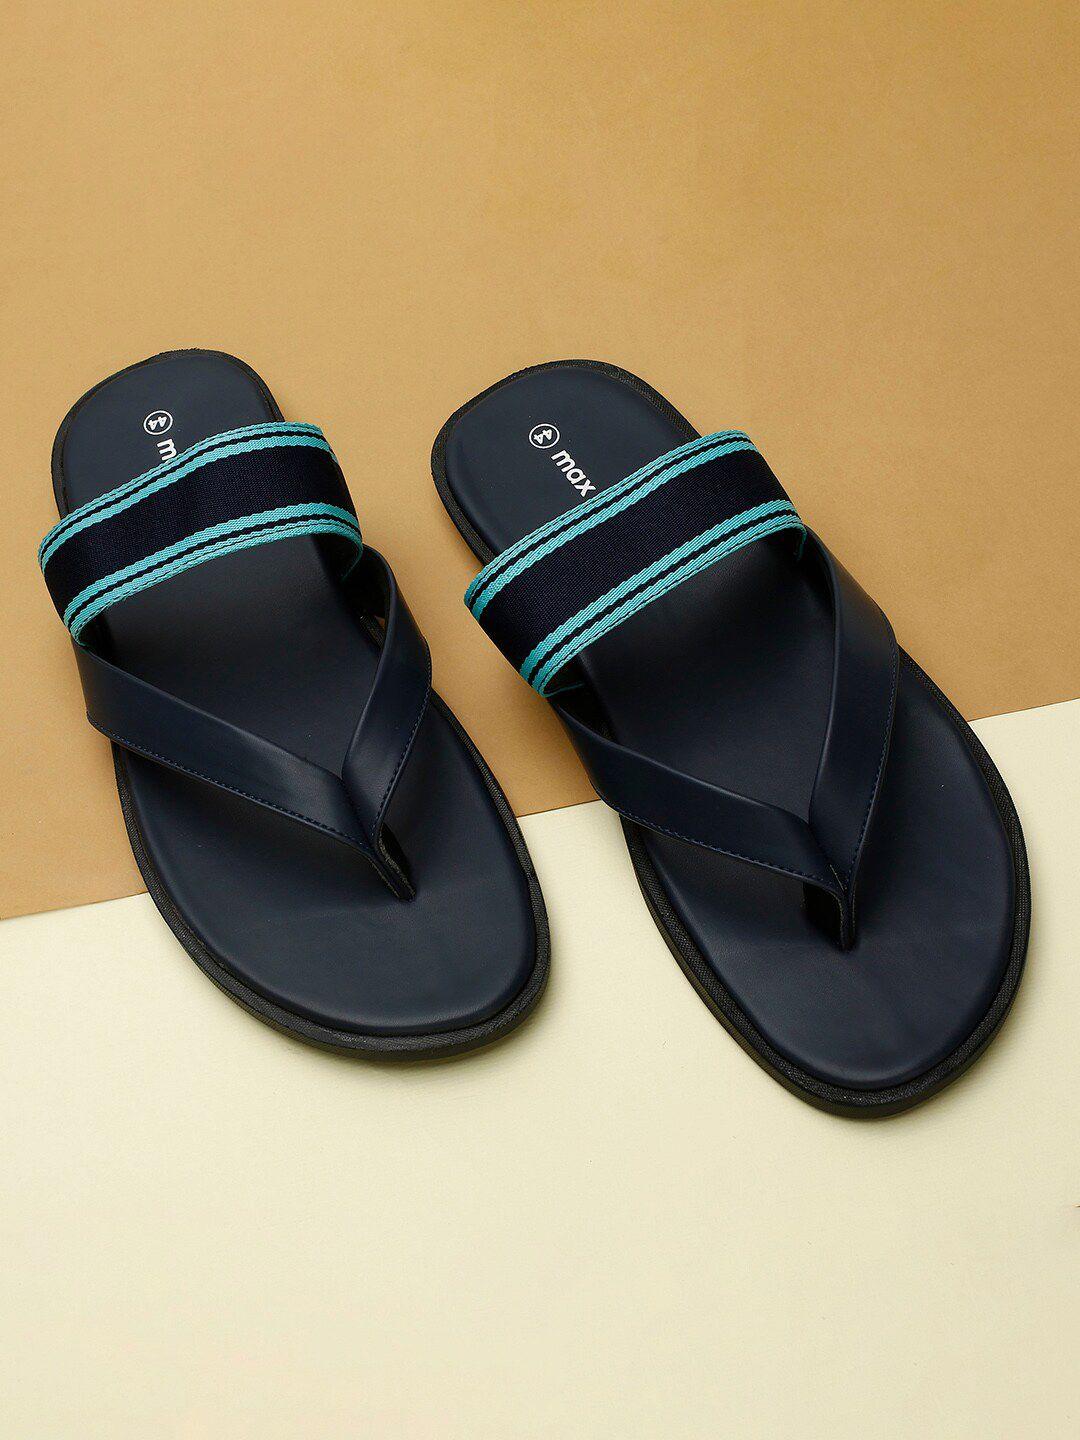 max-men-navy-blue-comfort-sandals